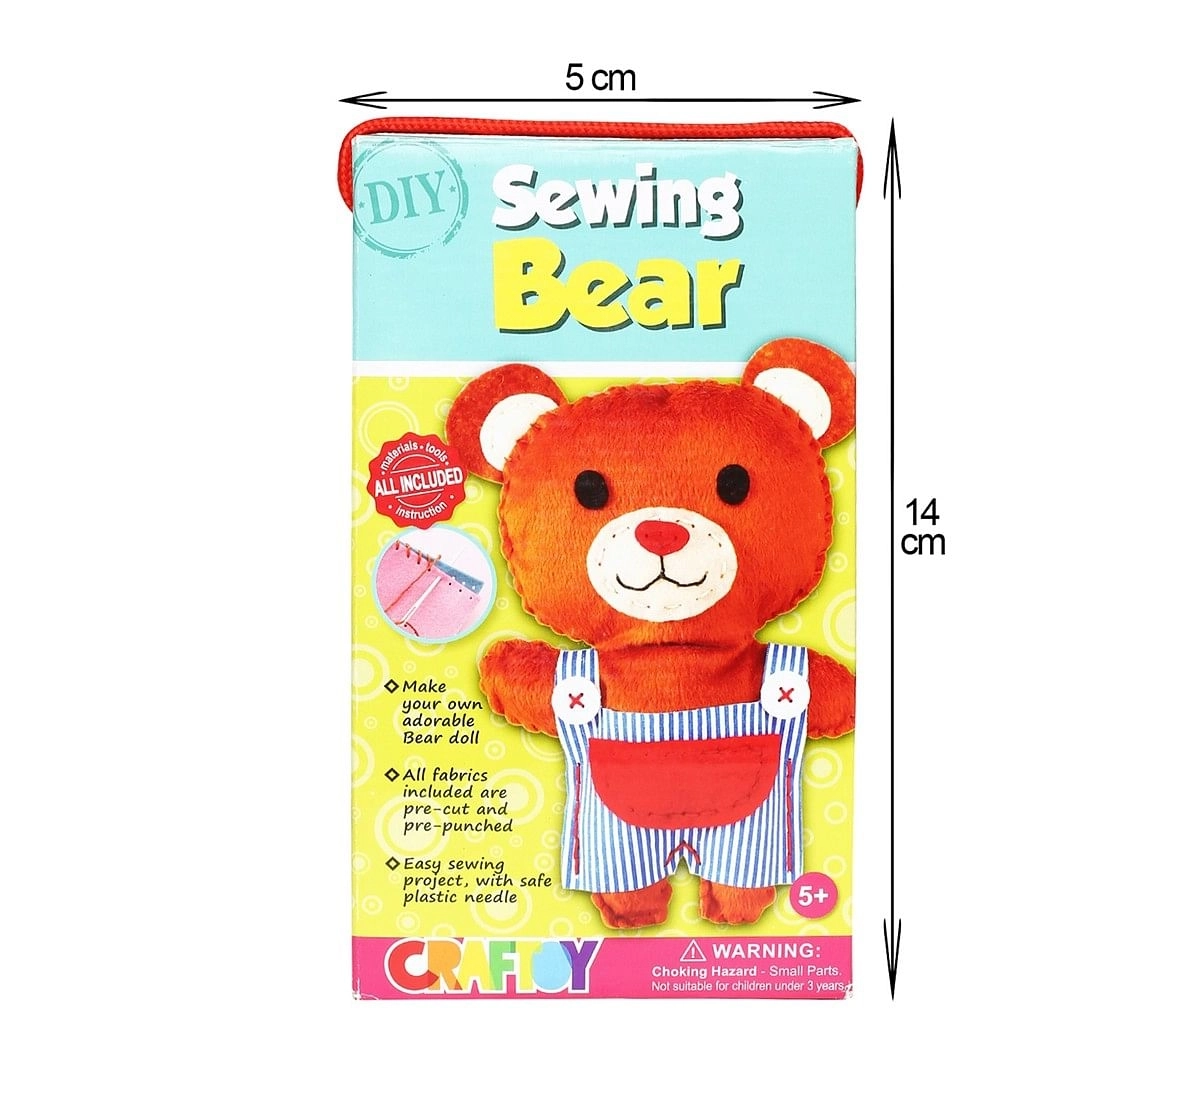 Comdaq Sewing Teddy Bear DIY Art & Craft Kit for Kids age 5Y+ 